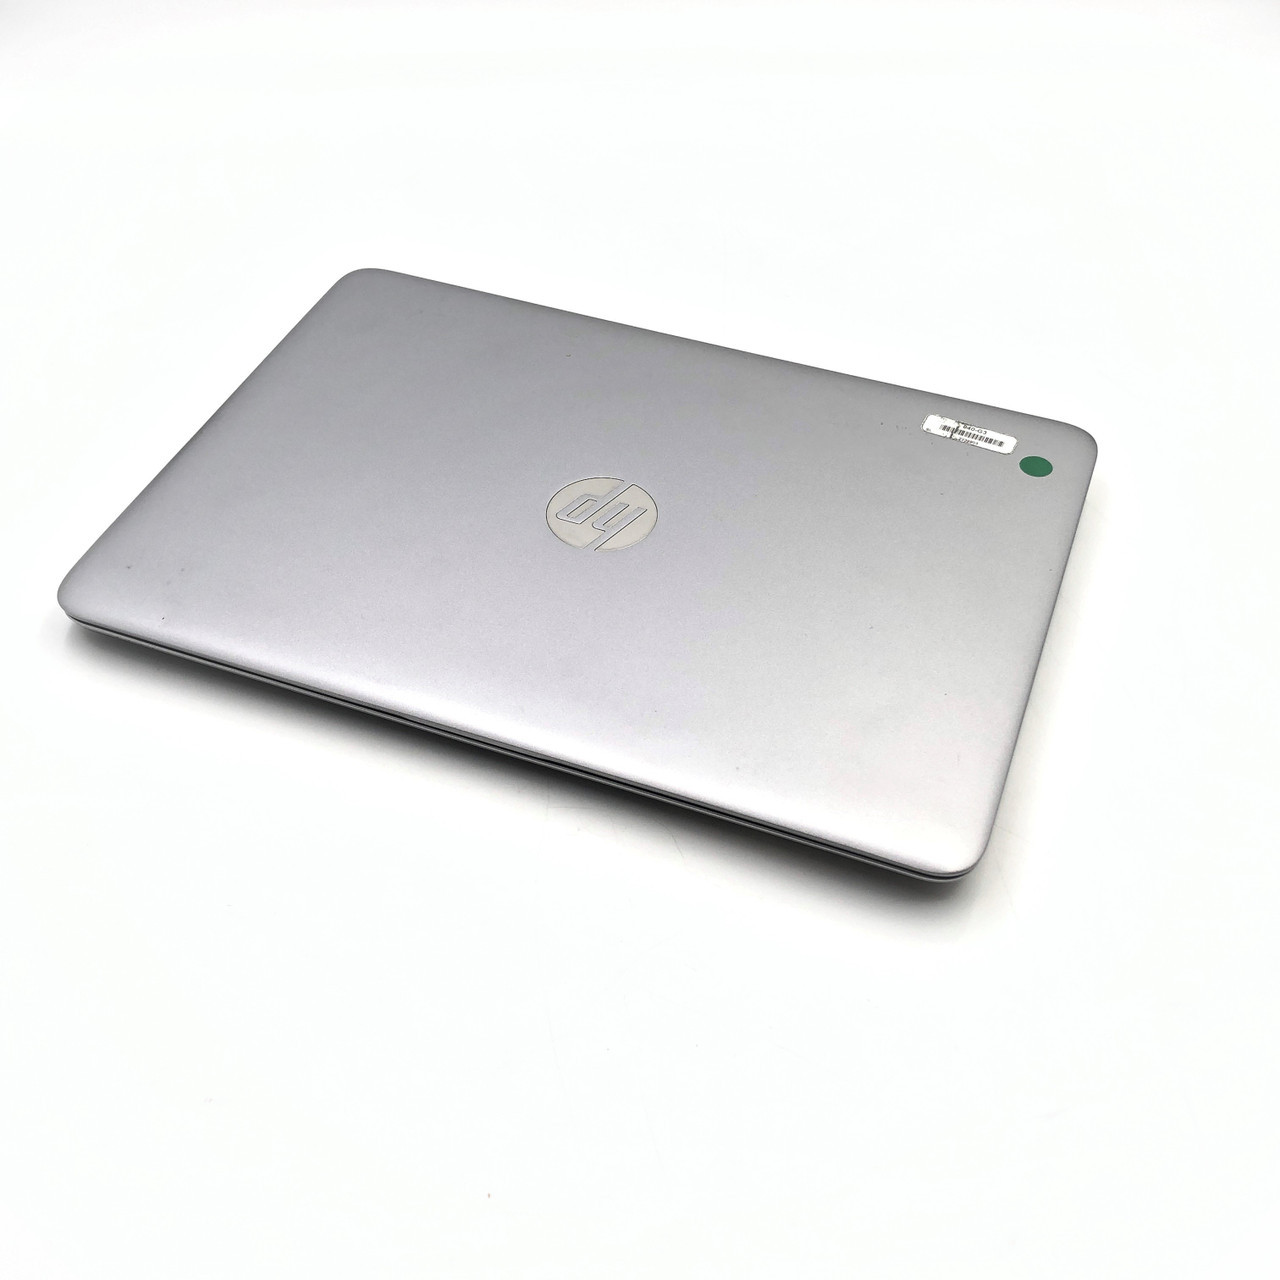 HP EliteBook 840 G3 - Intel Core i5-6300U, 16GB RAM, 256GB SSD - READ